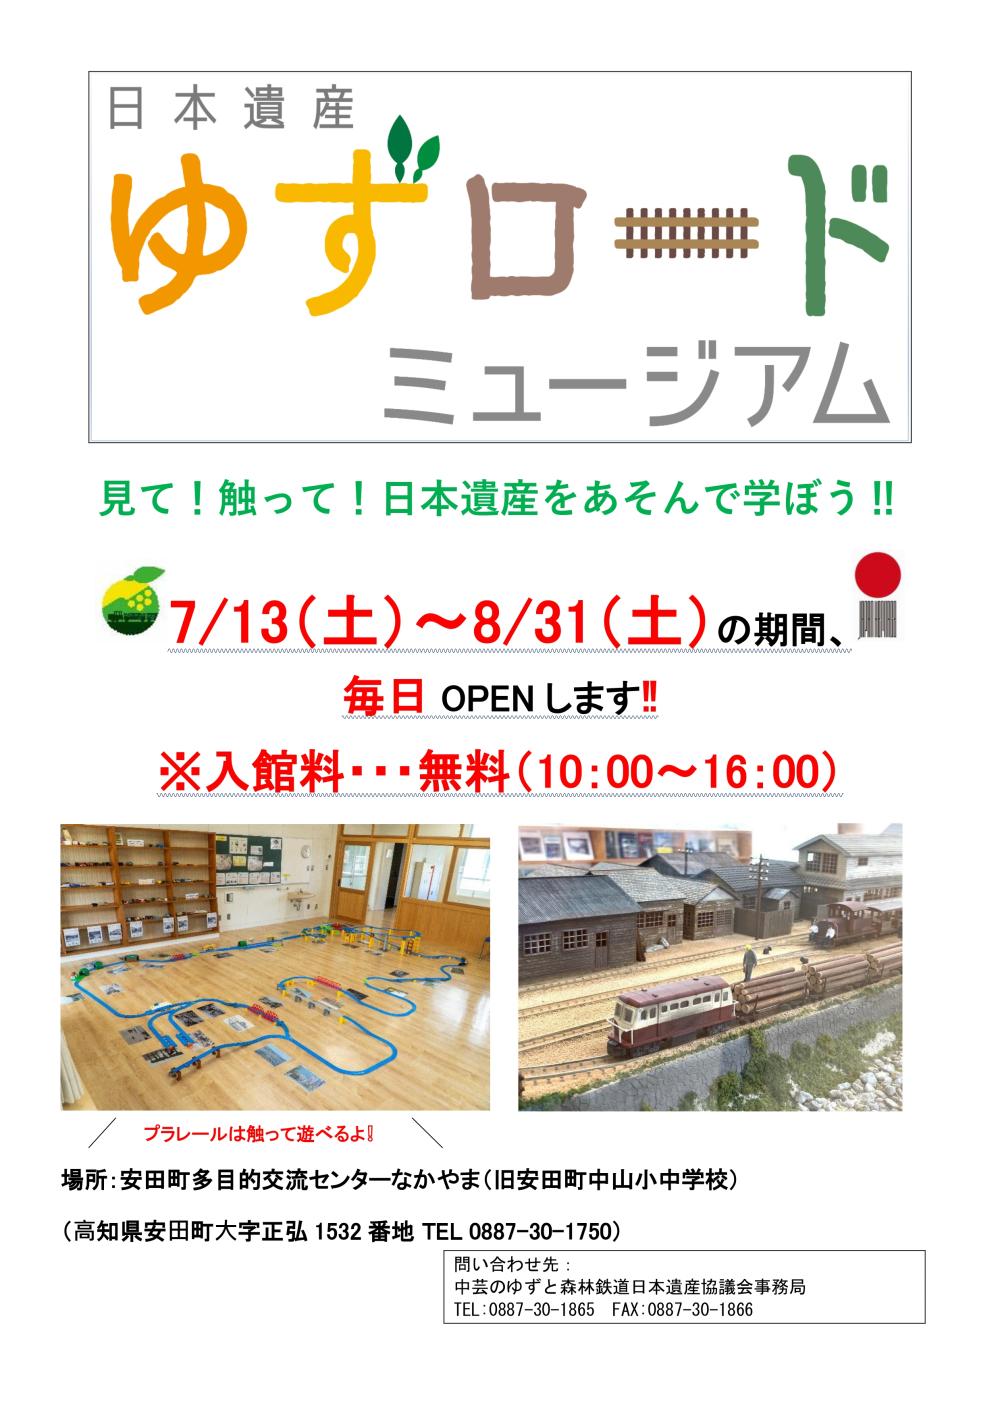 「日本遺産ゆずロードミュージアム」夏休み期間は毎日OPENします！